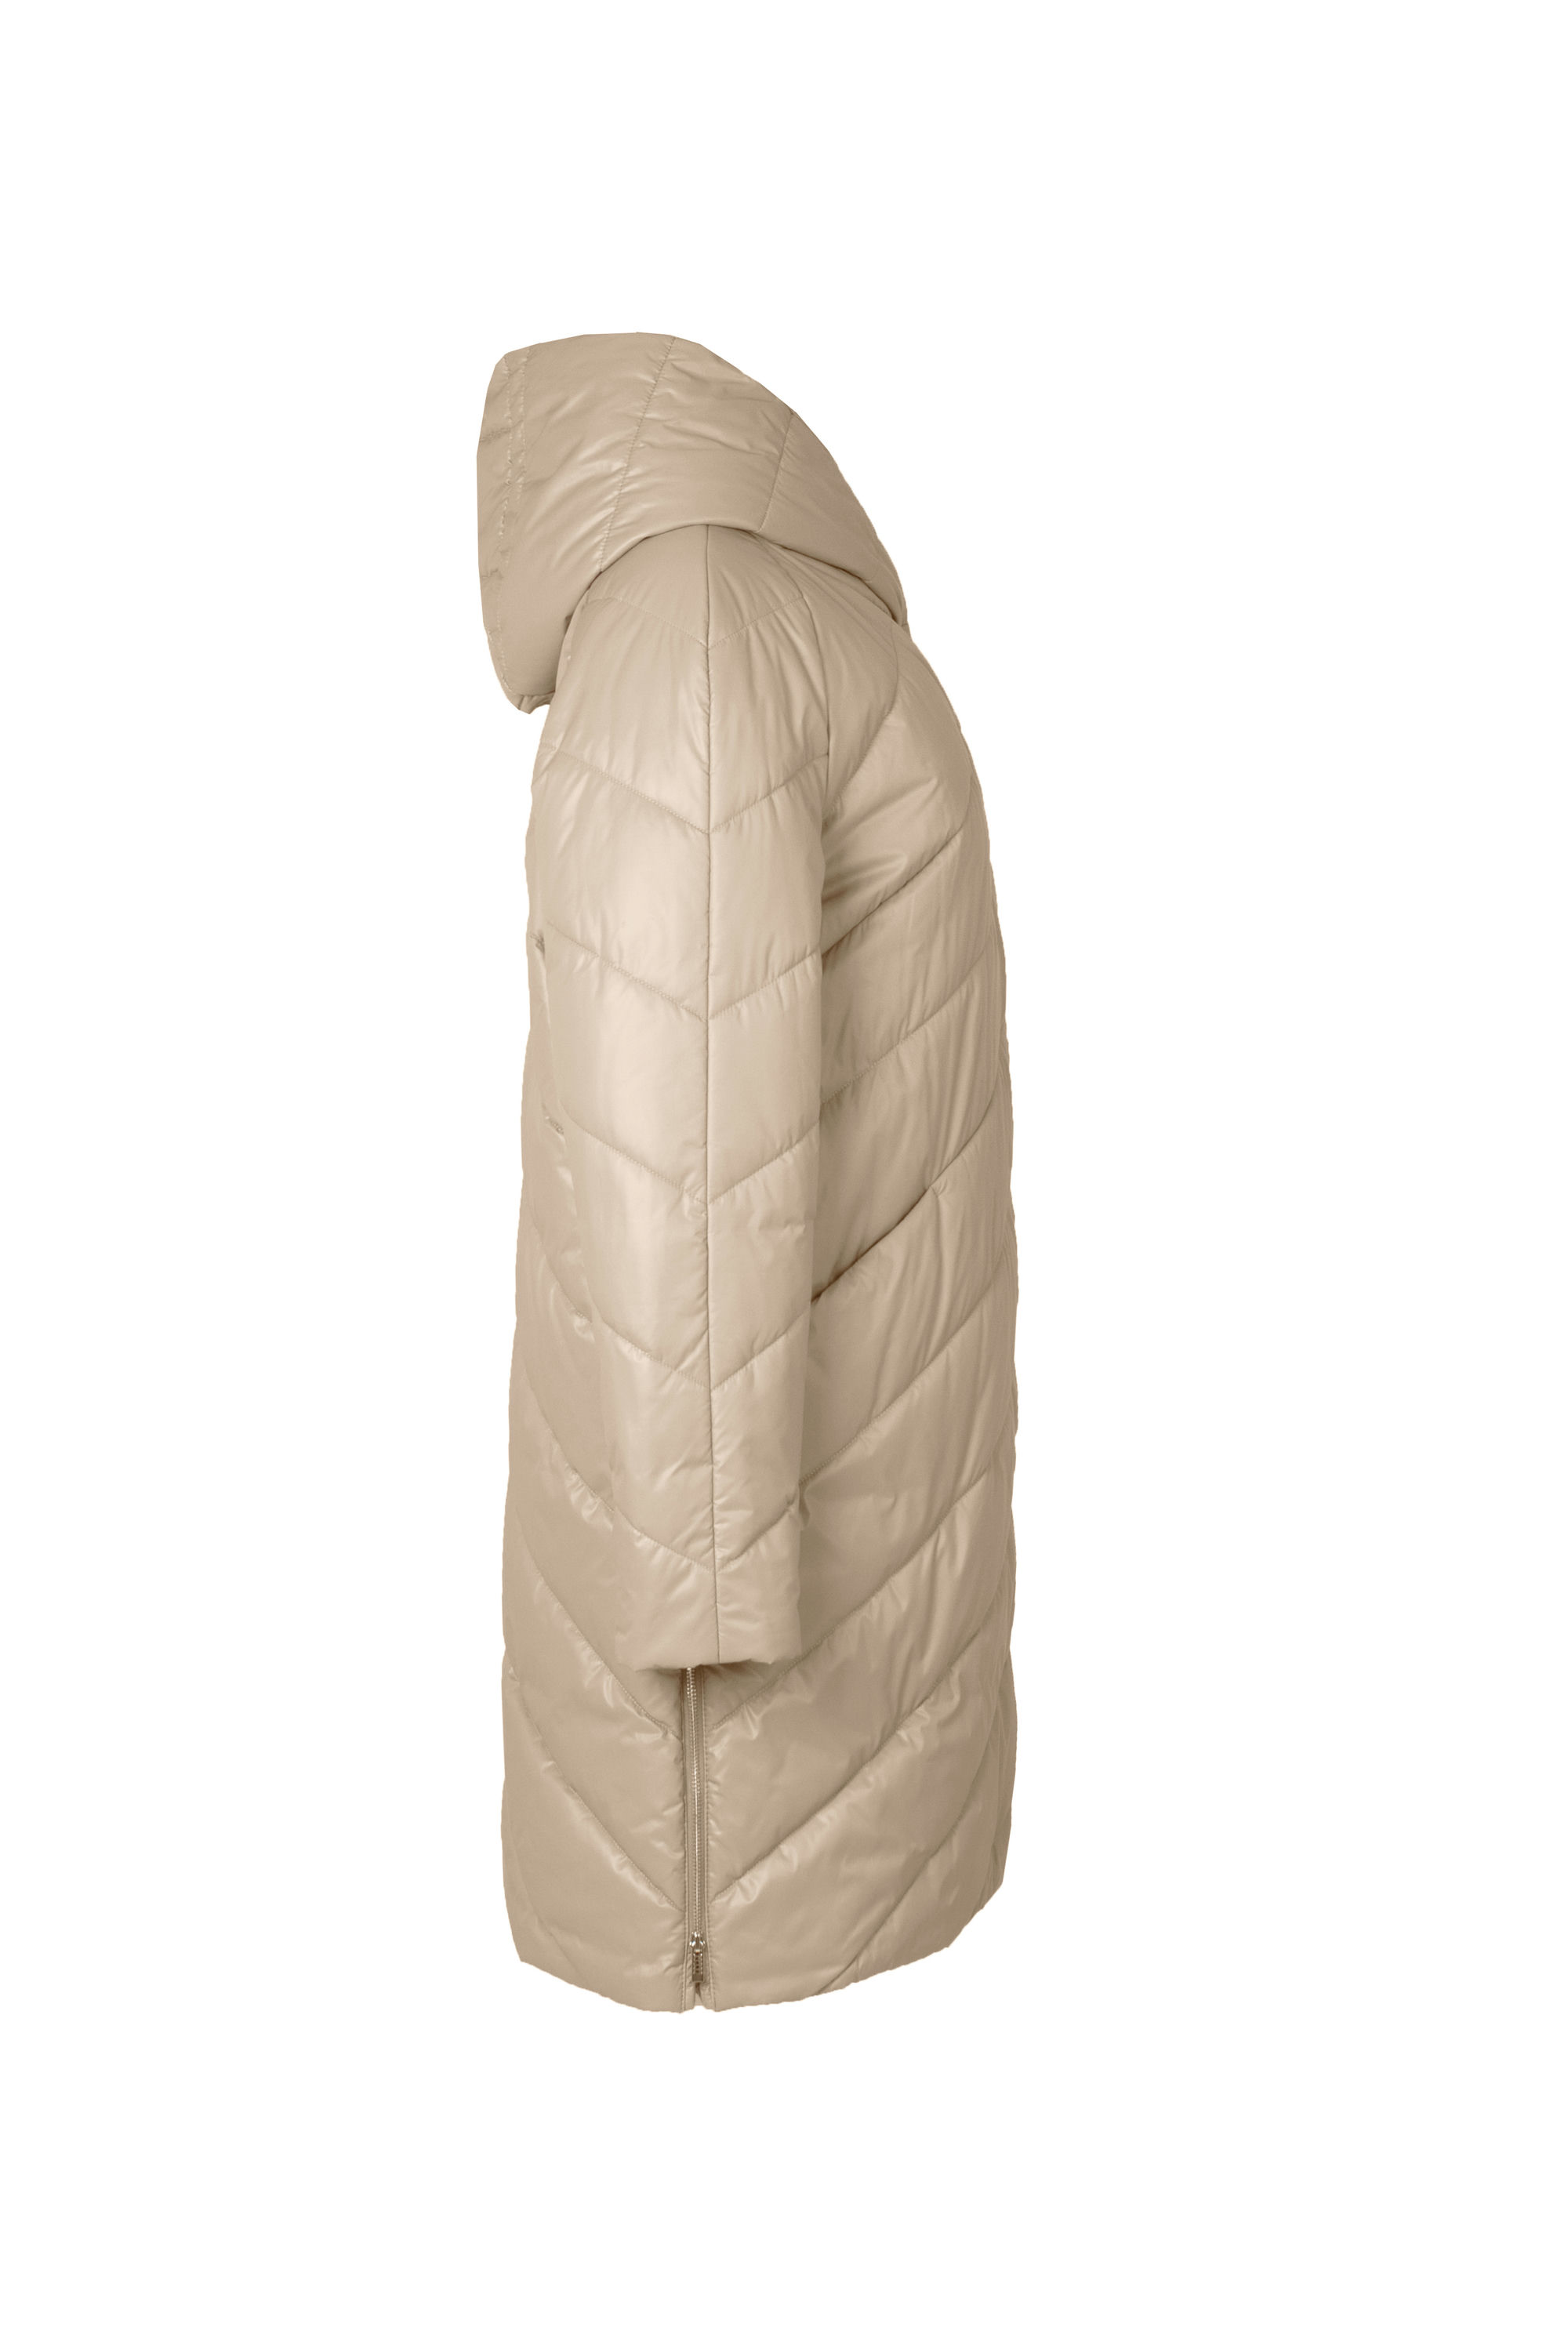 Пальто женское плащевое утепленное 5-12649-1. Фото 2.